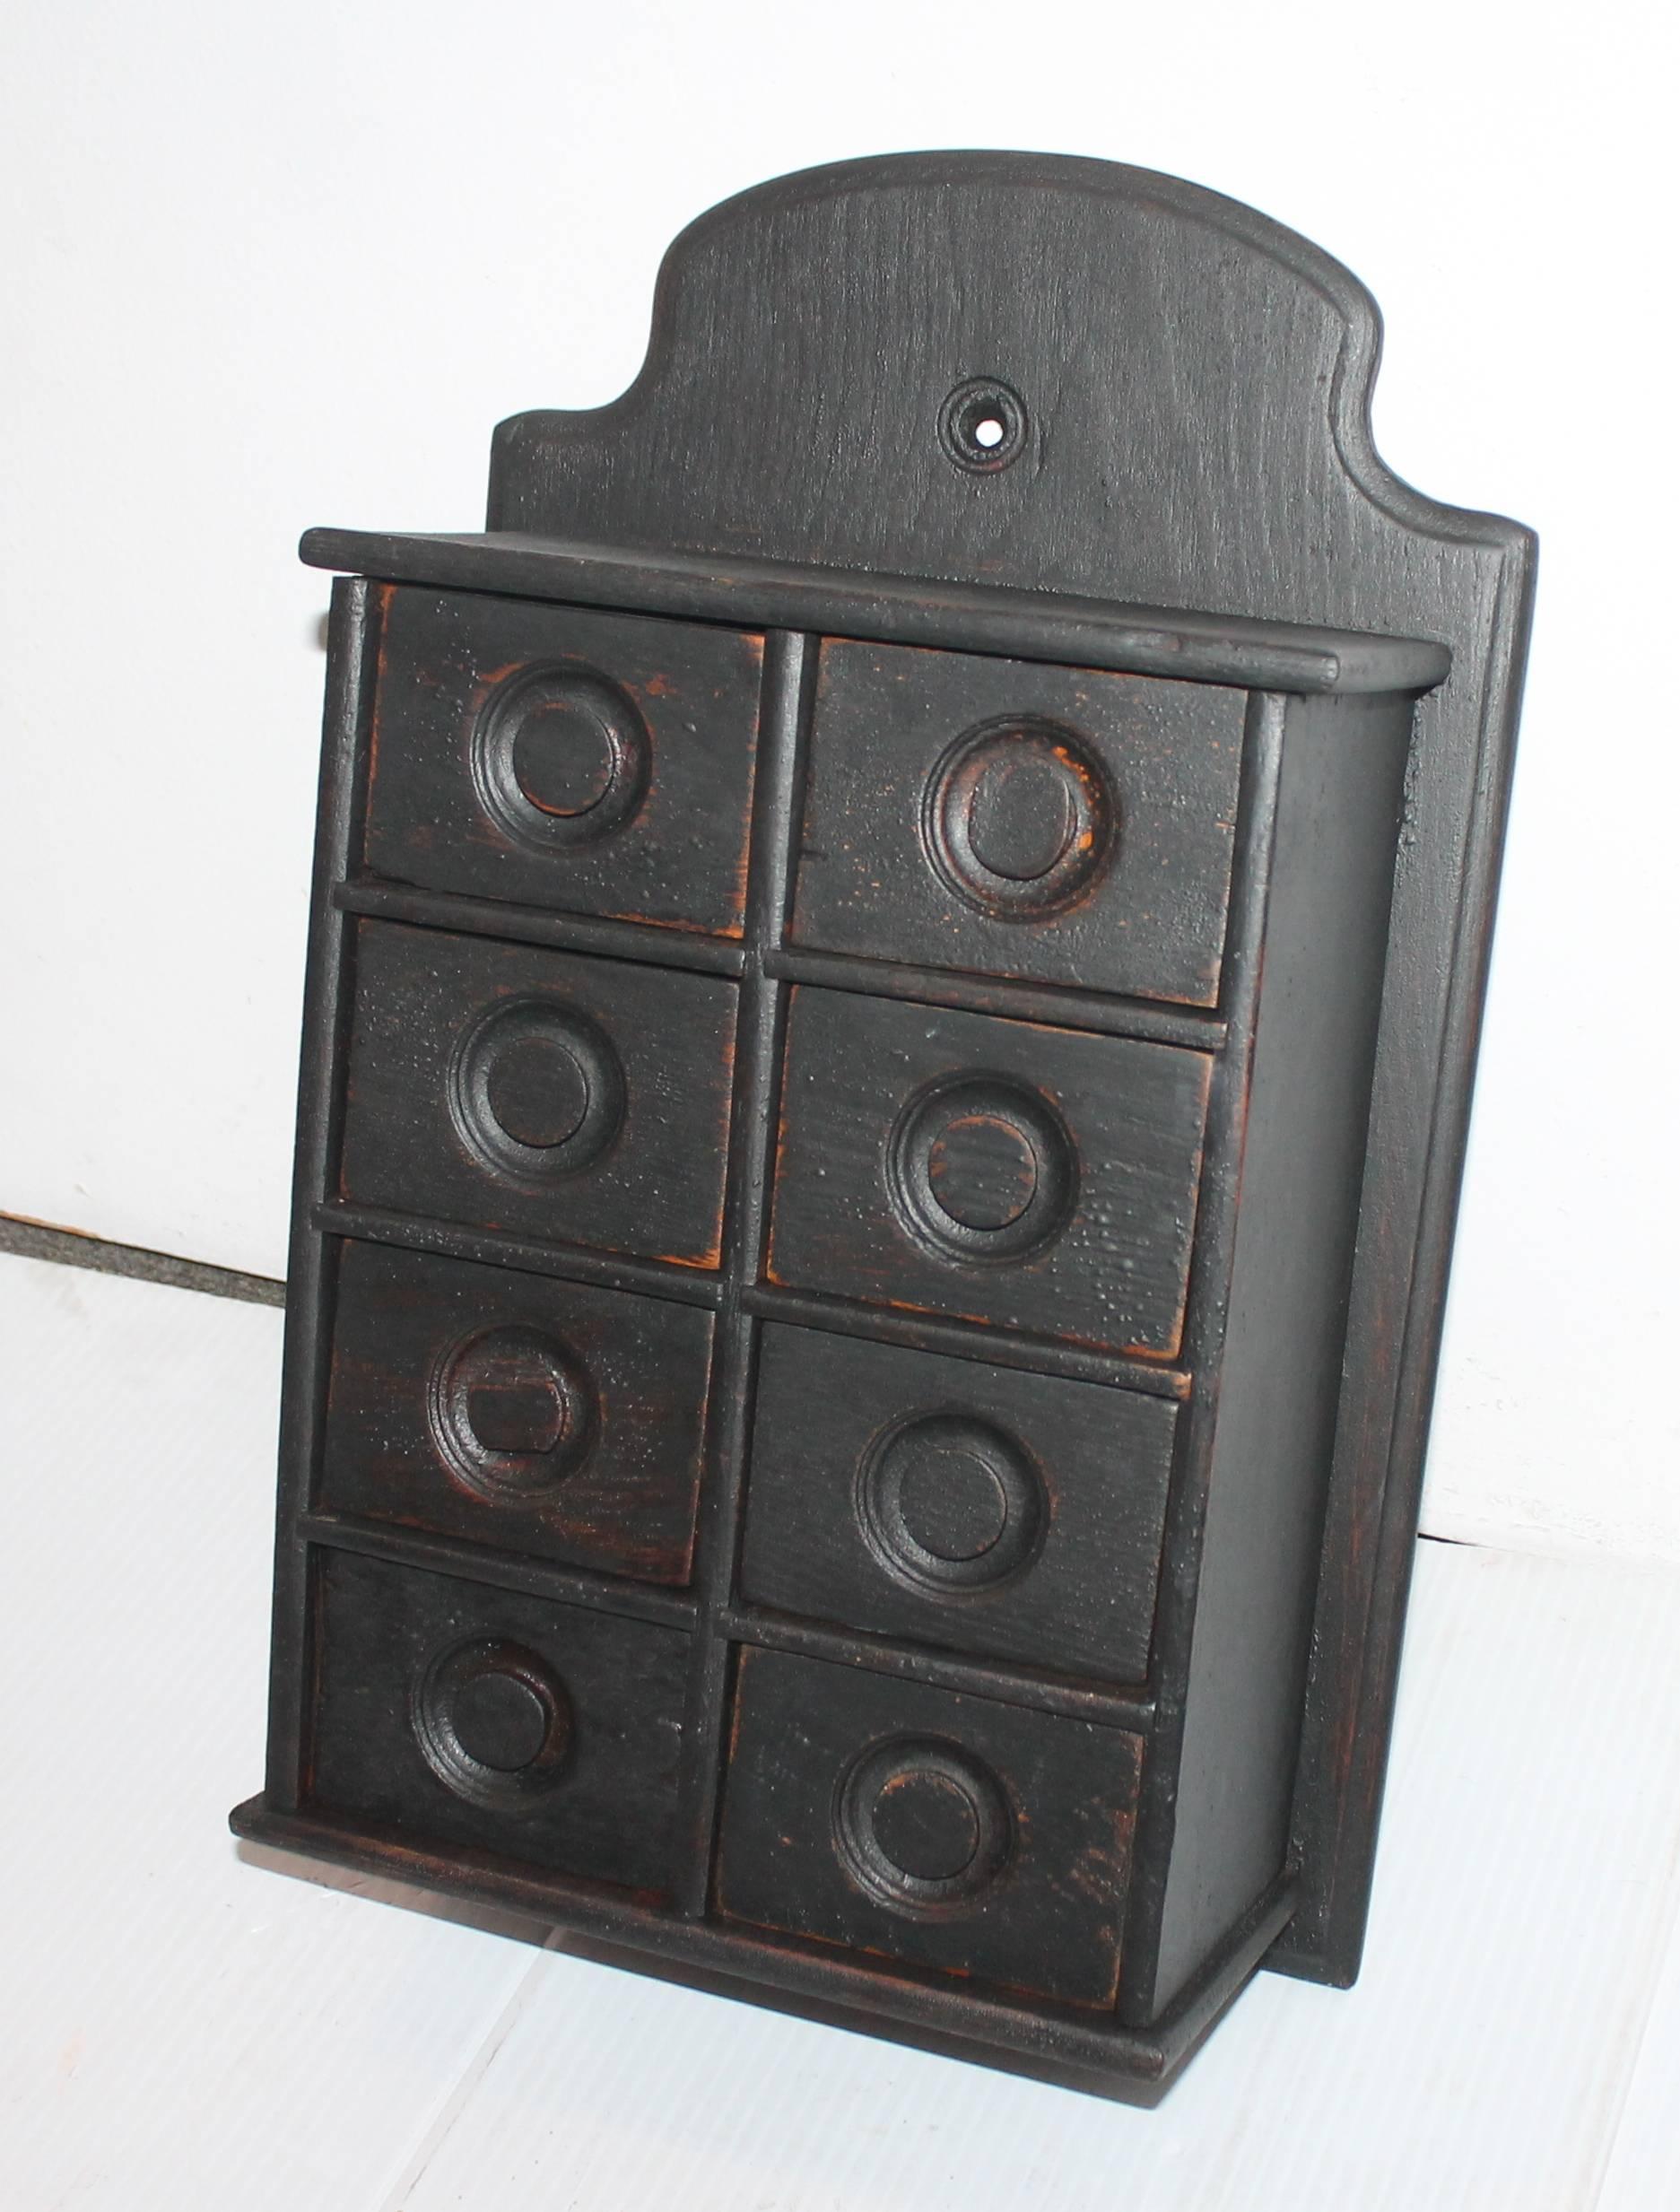 boîte à épices du 19ème siècle peinte en noir. Cette boîte à épices a été trouvée en Pennsylvanie.